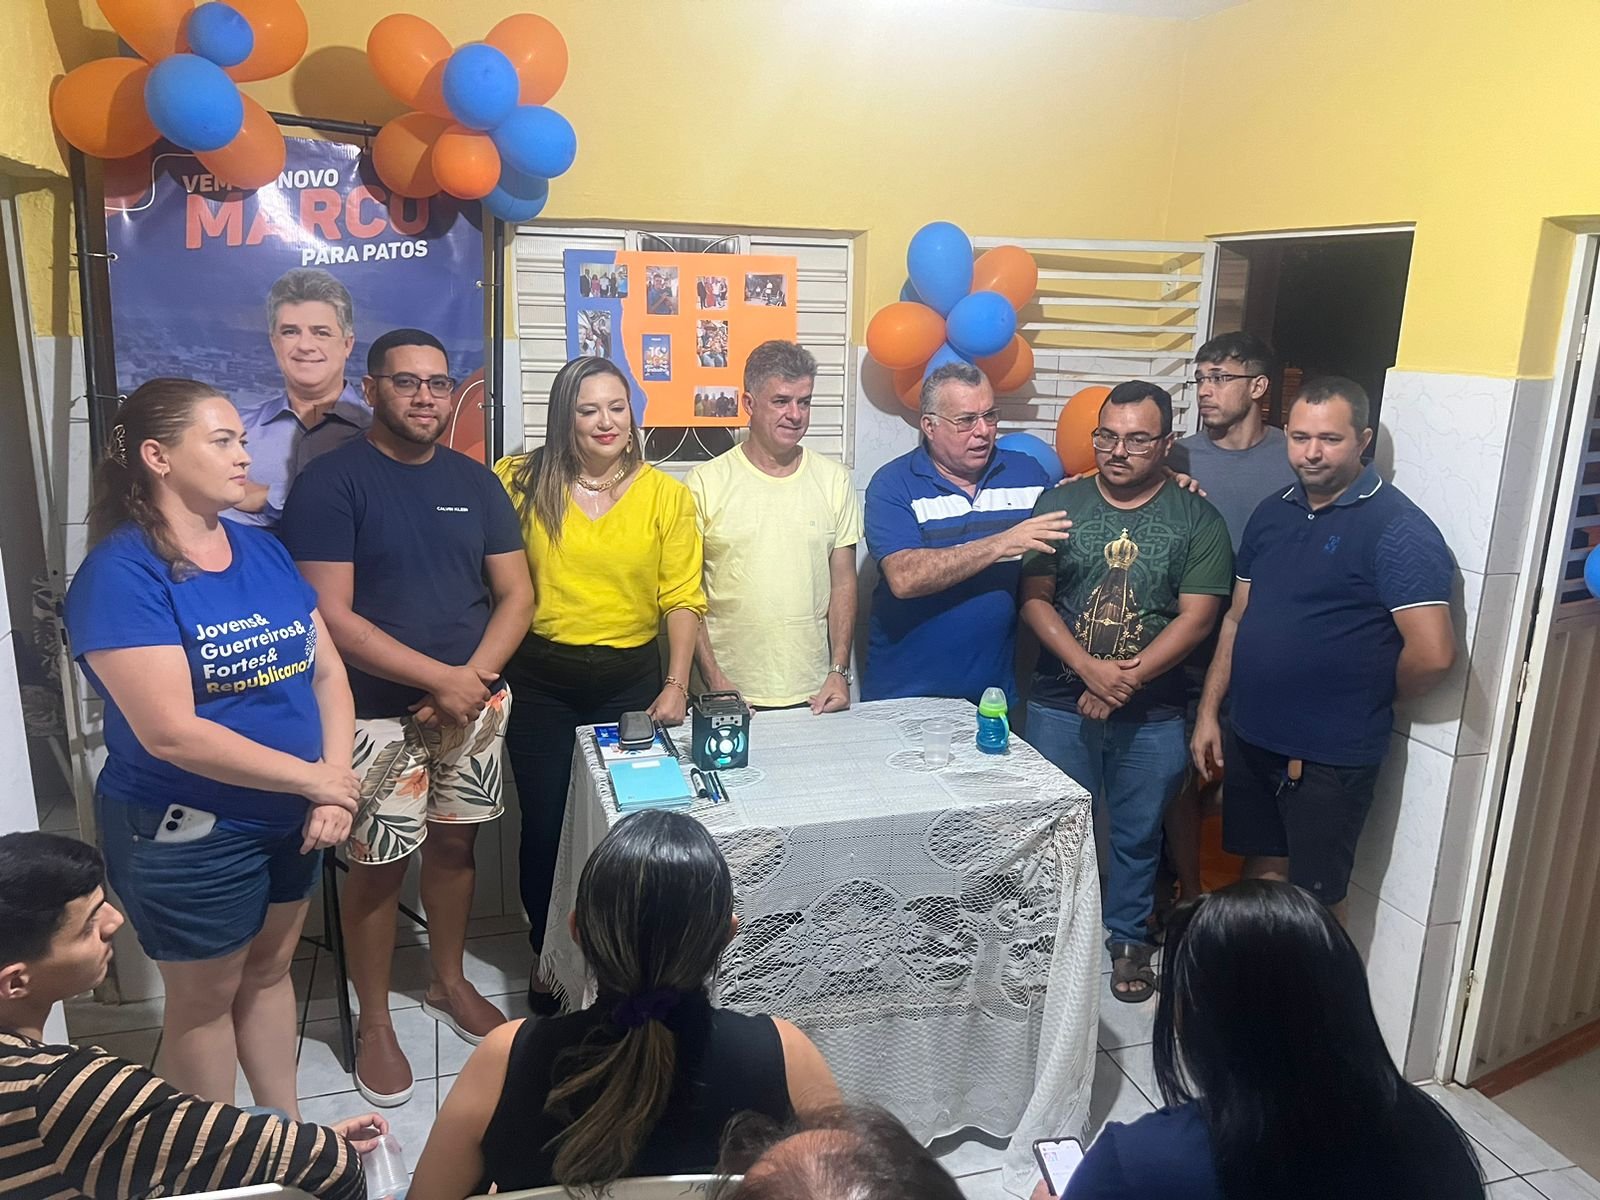 Vereador Marco César participa de reunião com apoiadores nos bairros Jatobá e Mutirão durante fim de semana